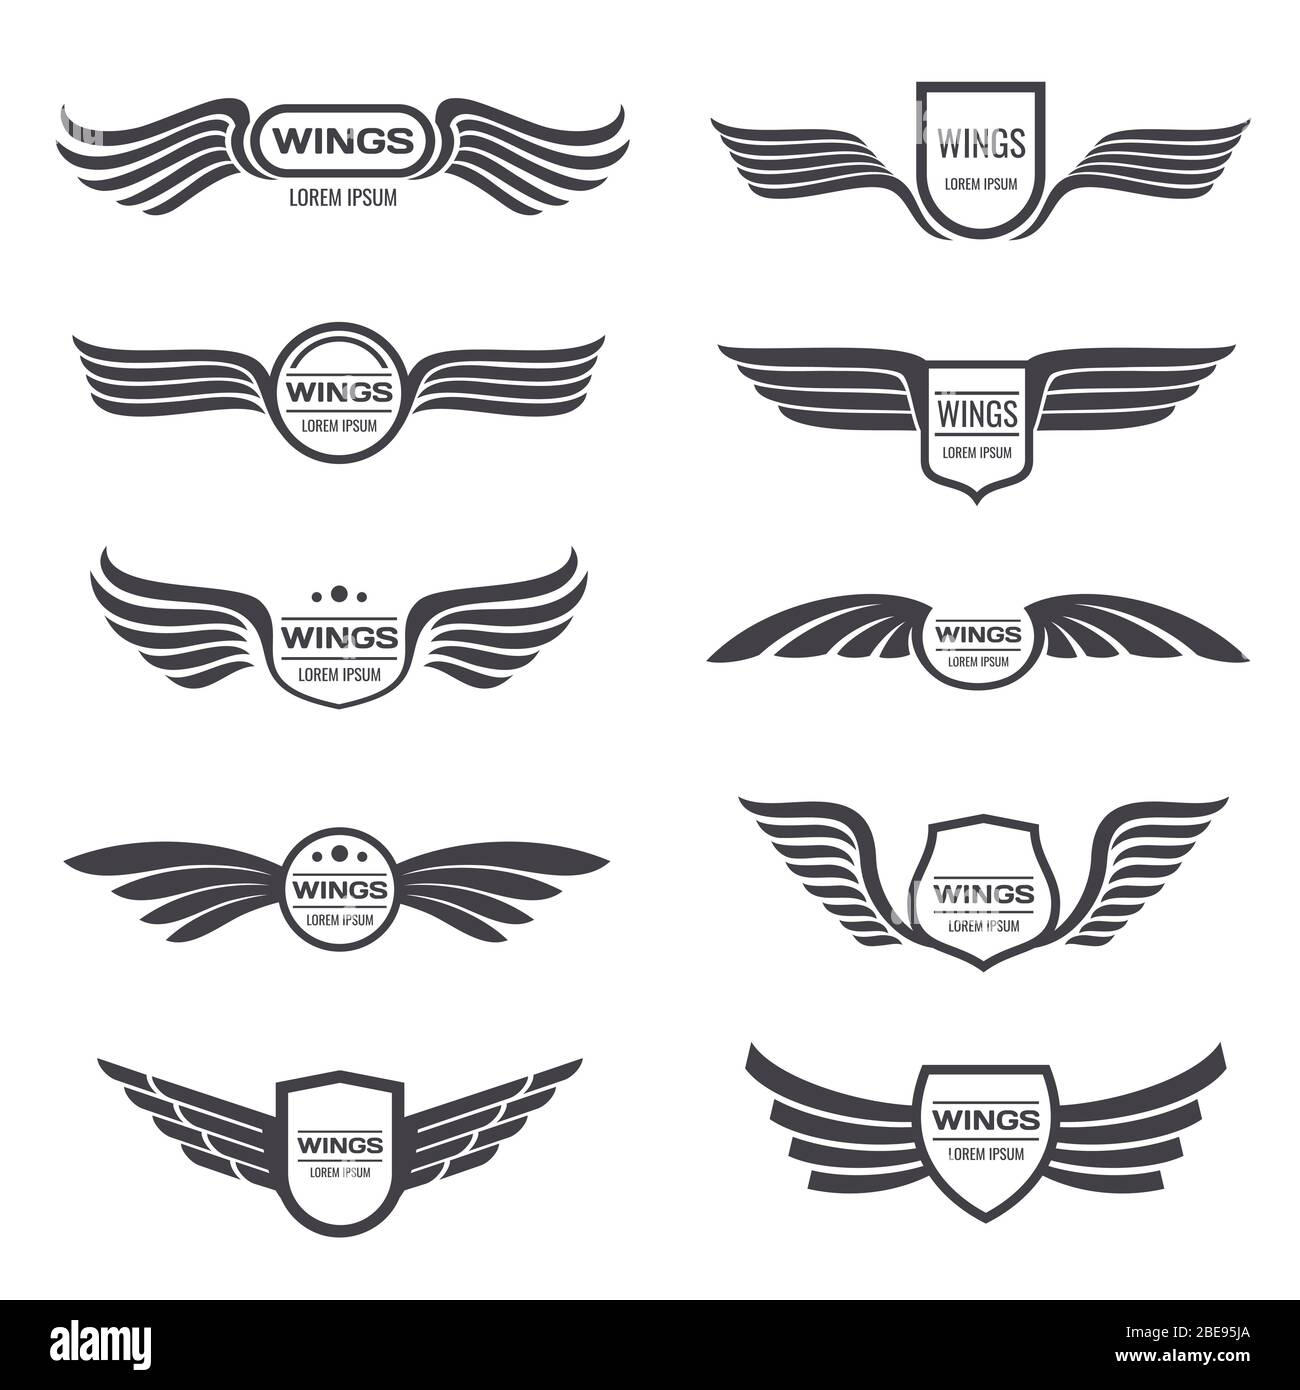 Flying Eagle Wings Vector Logos Set Vintage Winged Emblems And Labels Illustration Eagle Vintage Wings Emblem Stock Vector Image Art Alamy